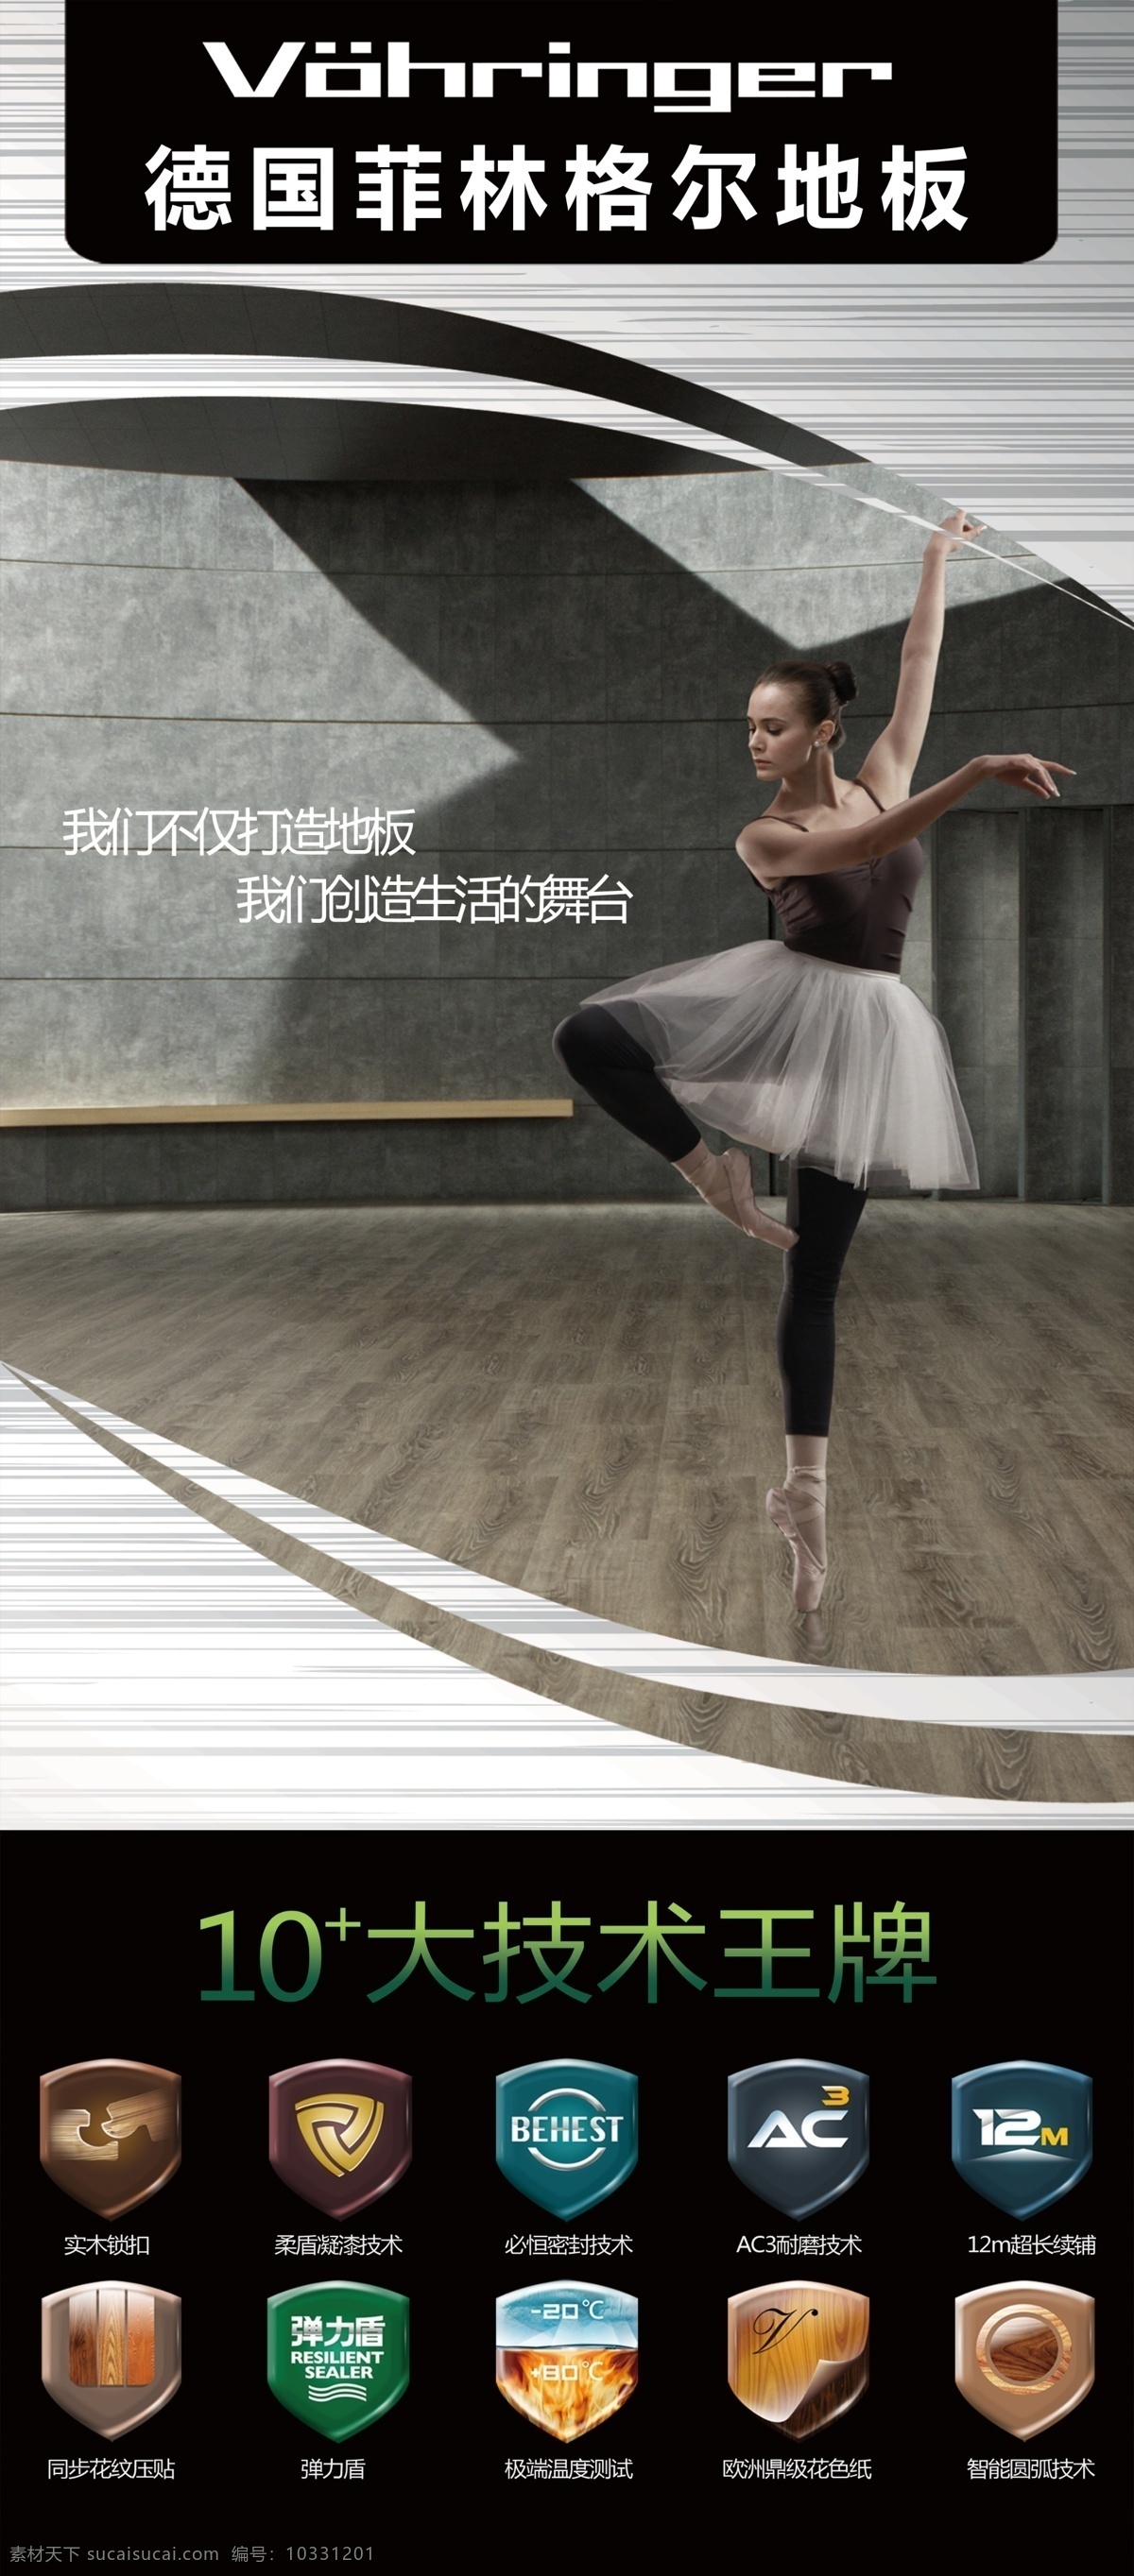 菲林格尔地板 菲林格尔 跳舞的人 地板展架 地板技术 十大技术 菲 林格尔 logo 银色拉丝 拉丝展架 芭蕾舞 psd分层 建材 展板模板